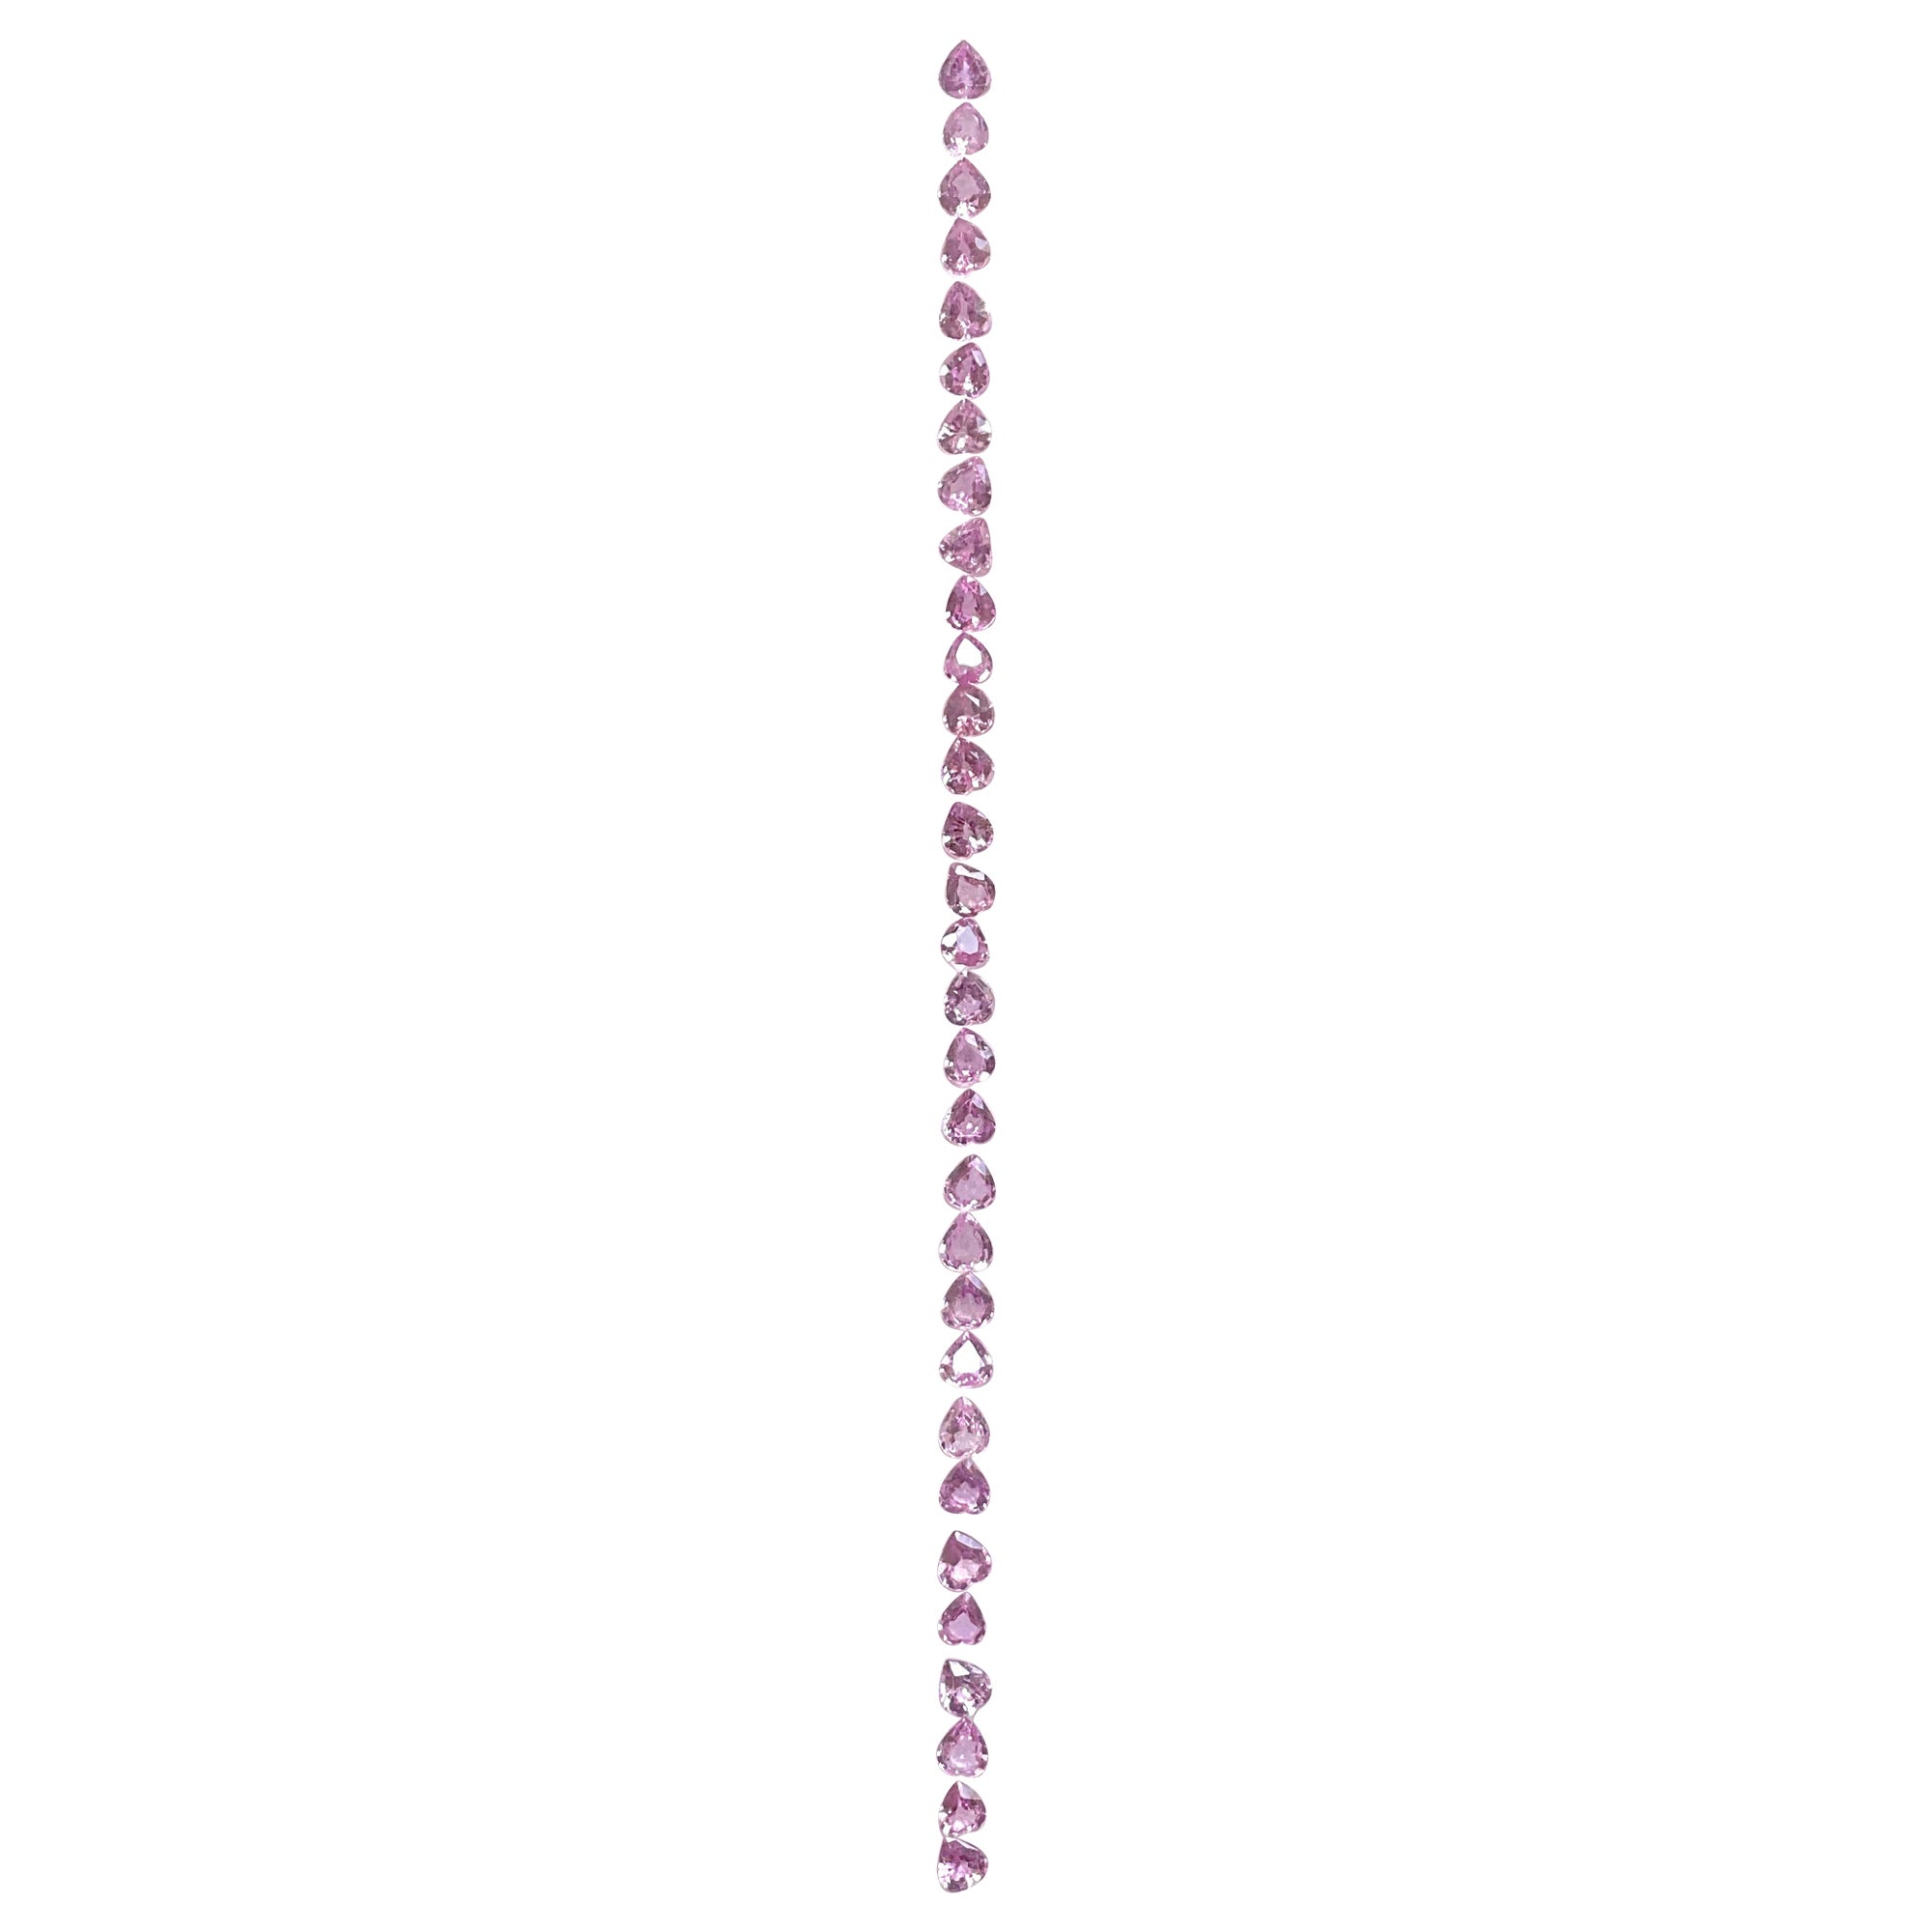 7.47 cts Pink Sapphire Heart shape bracelet set cutstones For Fine Jewelry gems